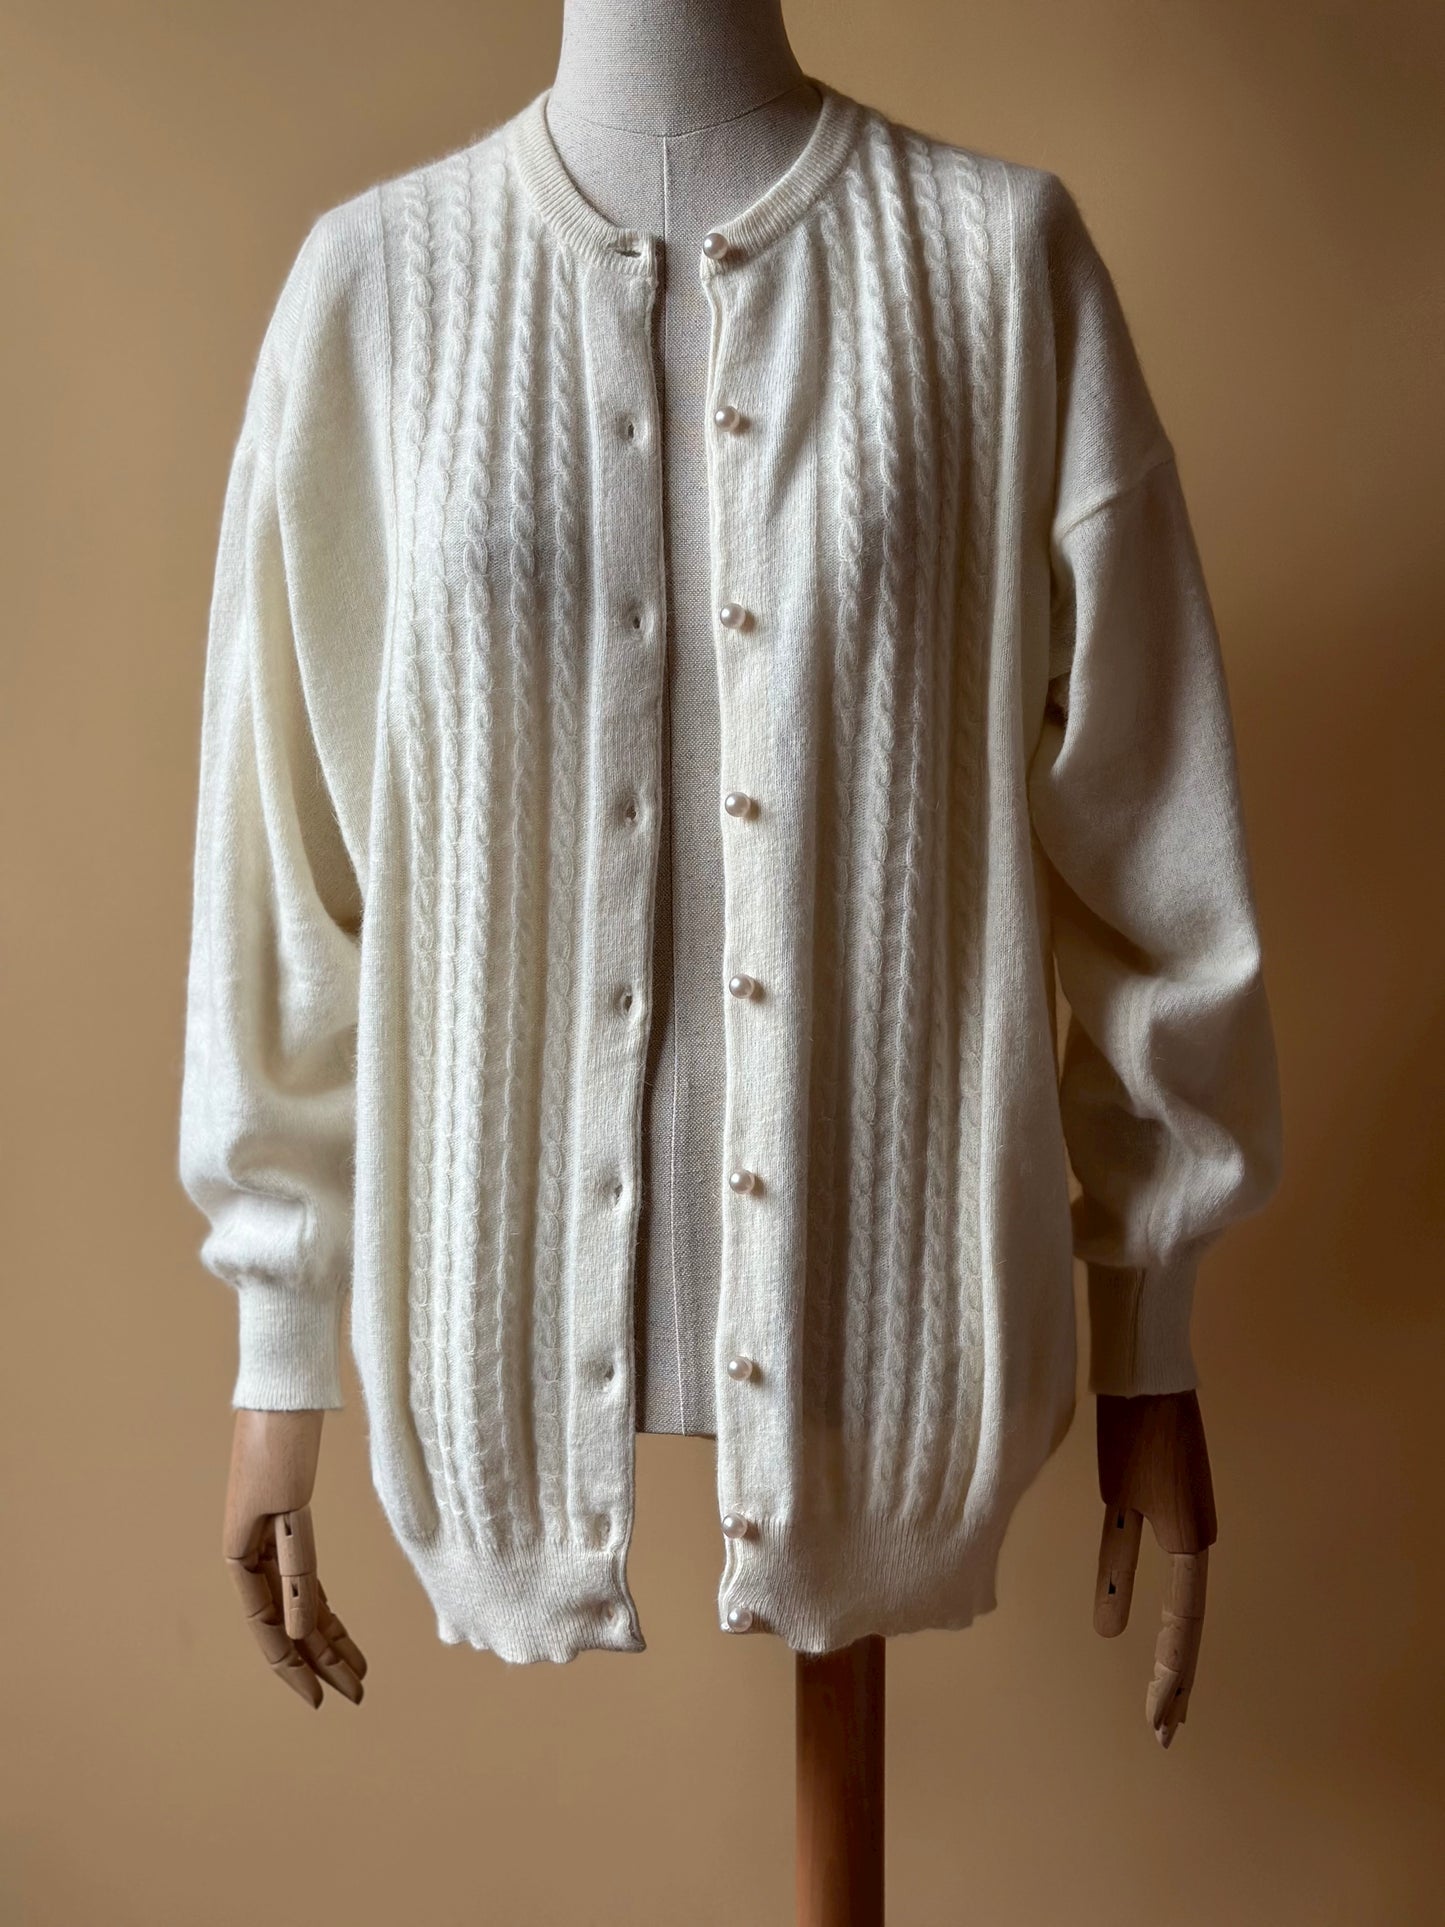 Vintage Wool & Angora White Cardigan